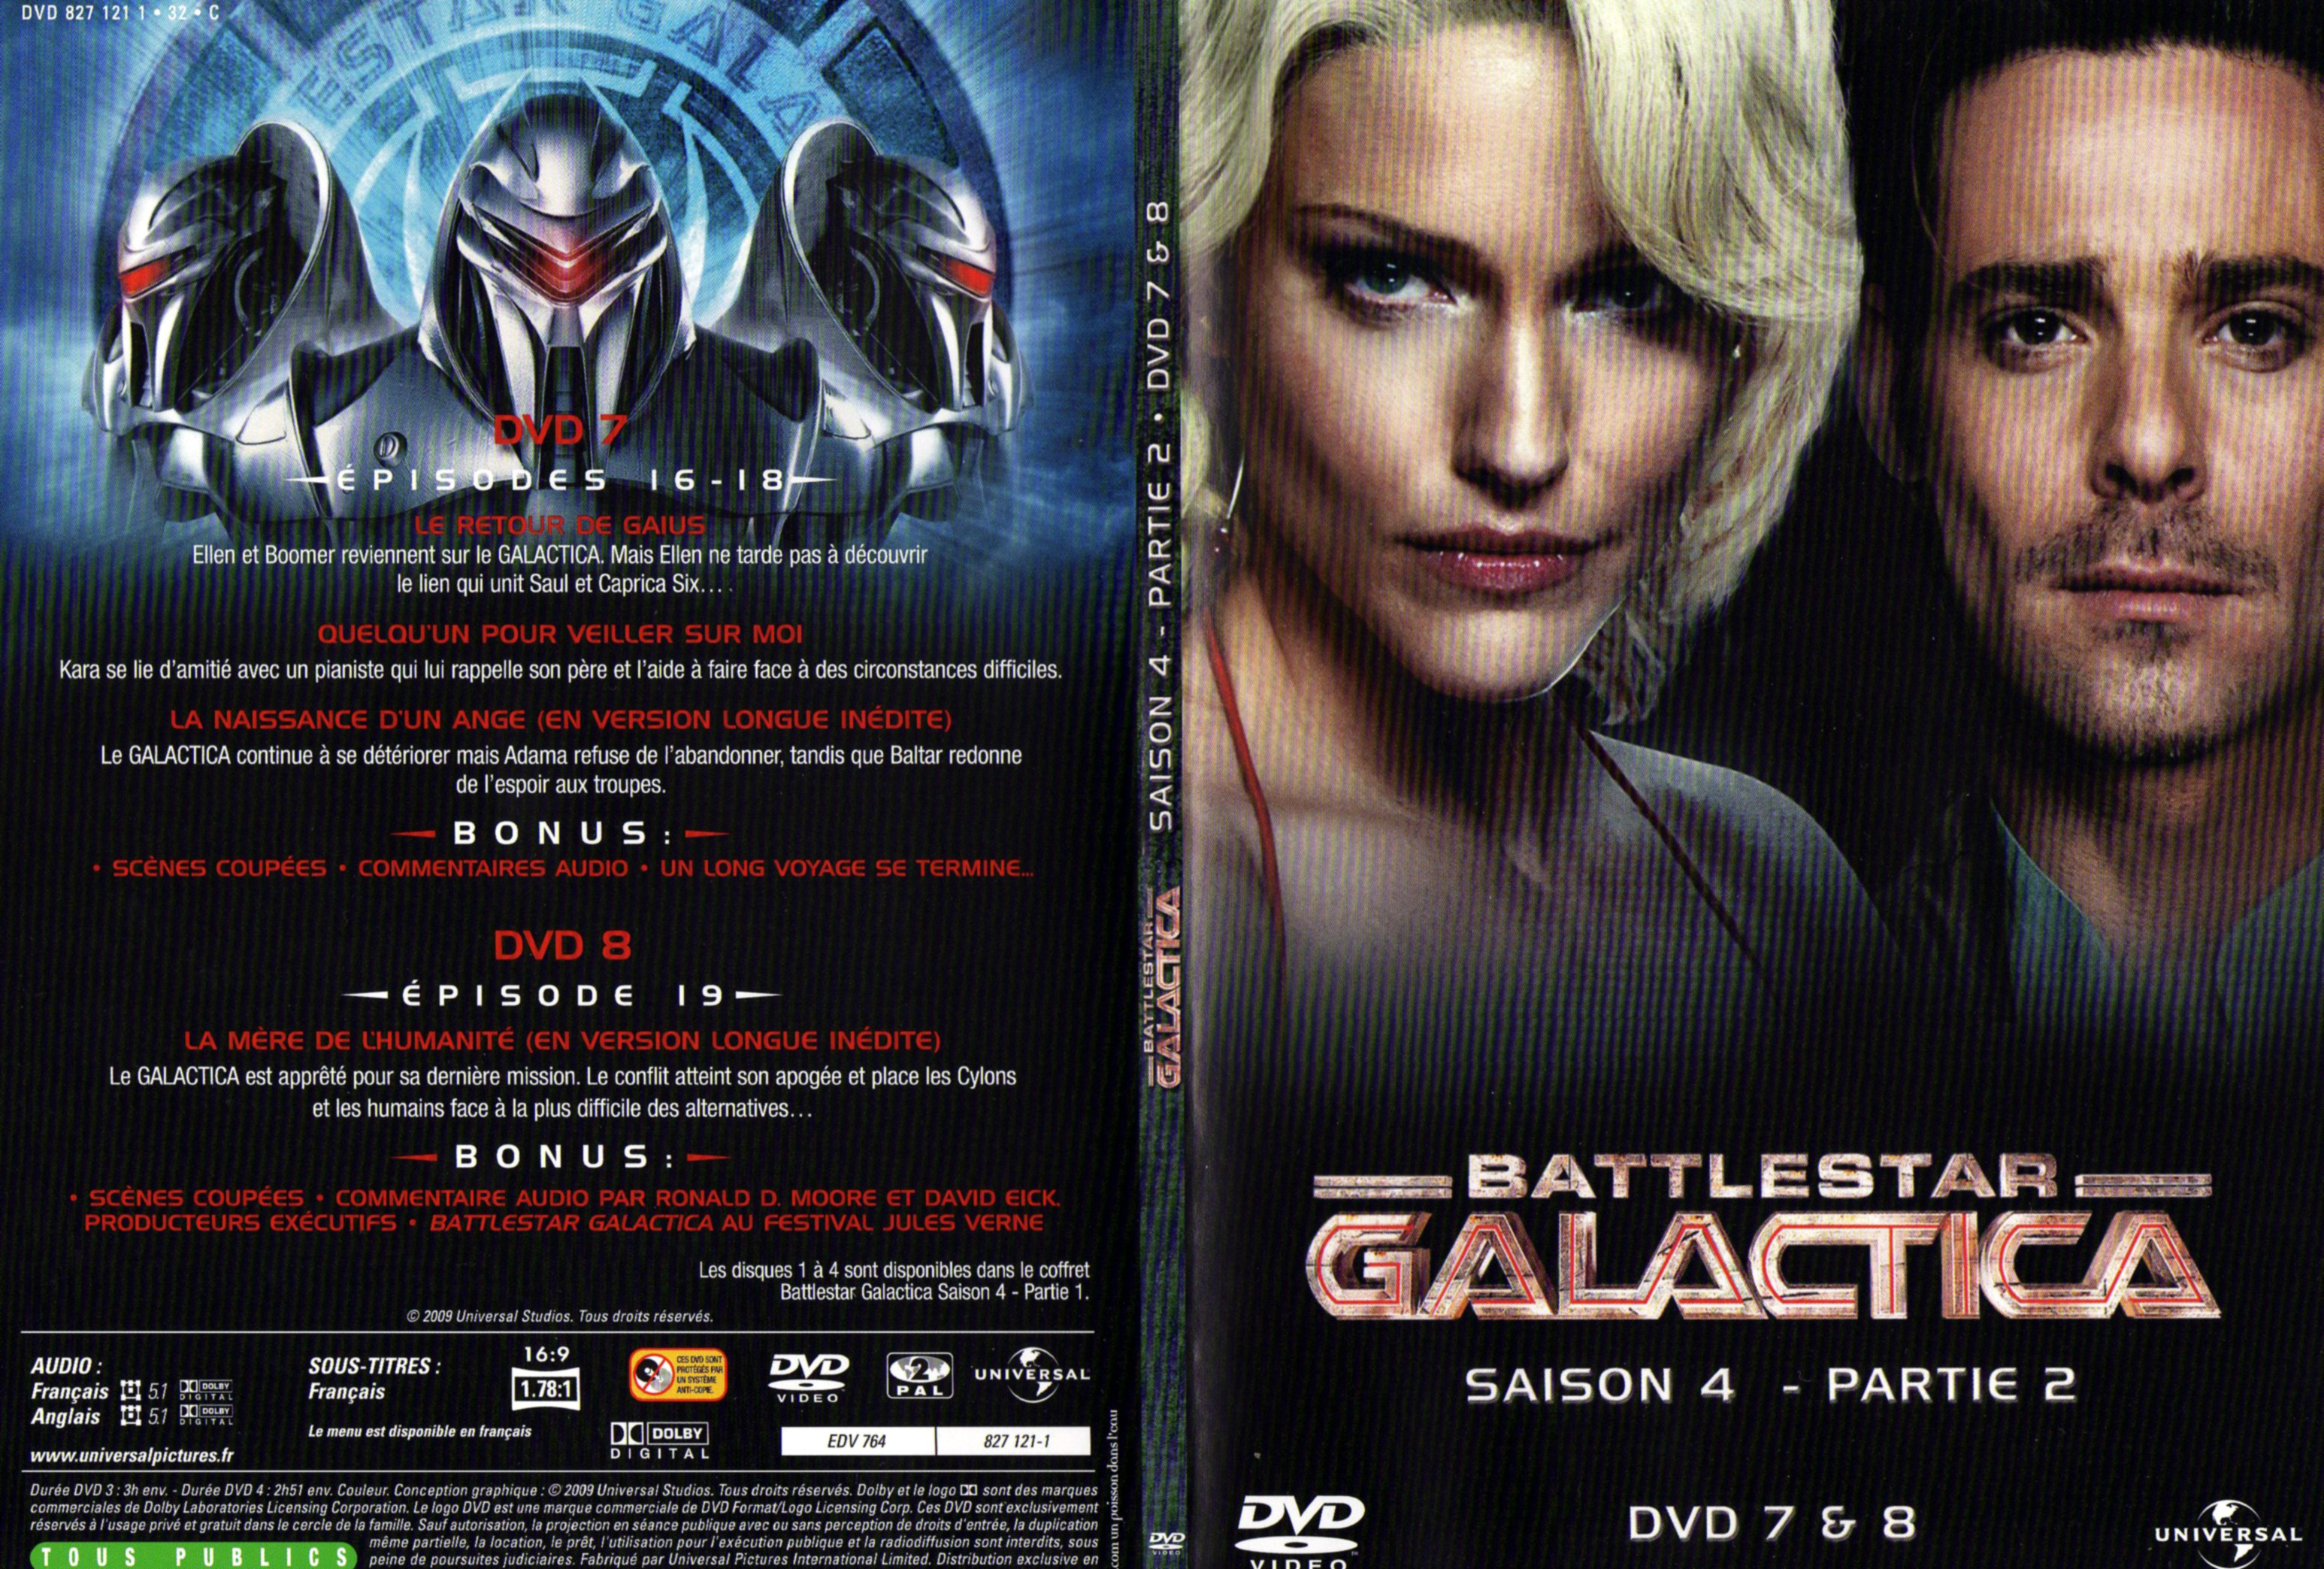 Jaquette DVD Battlestar Galactica Saison 4 partie 2 DVD 7